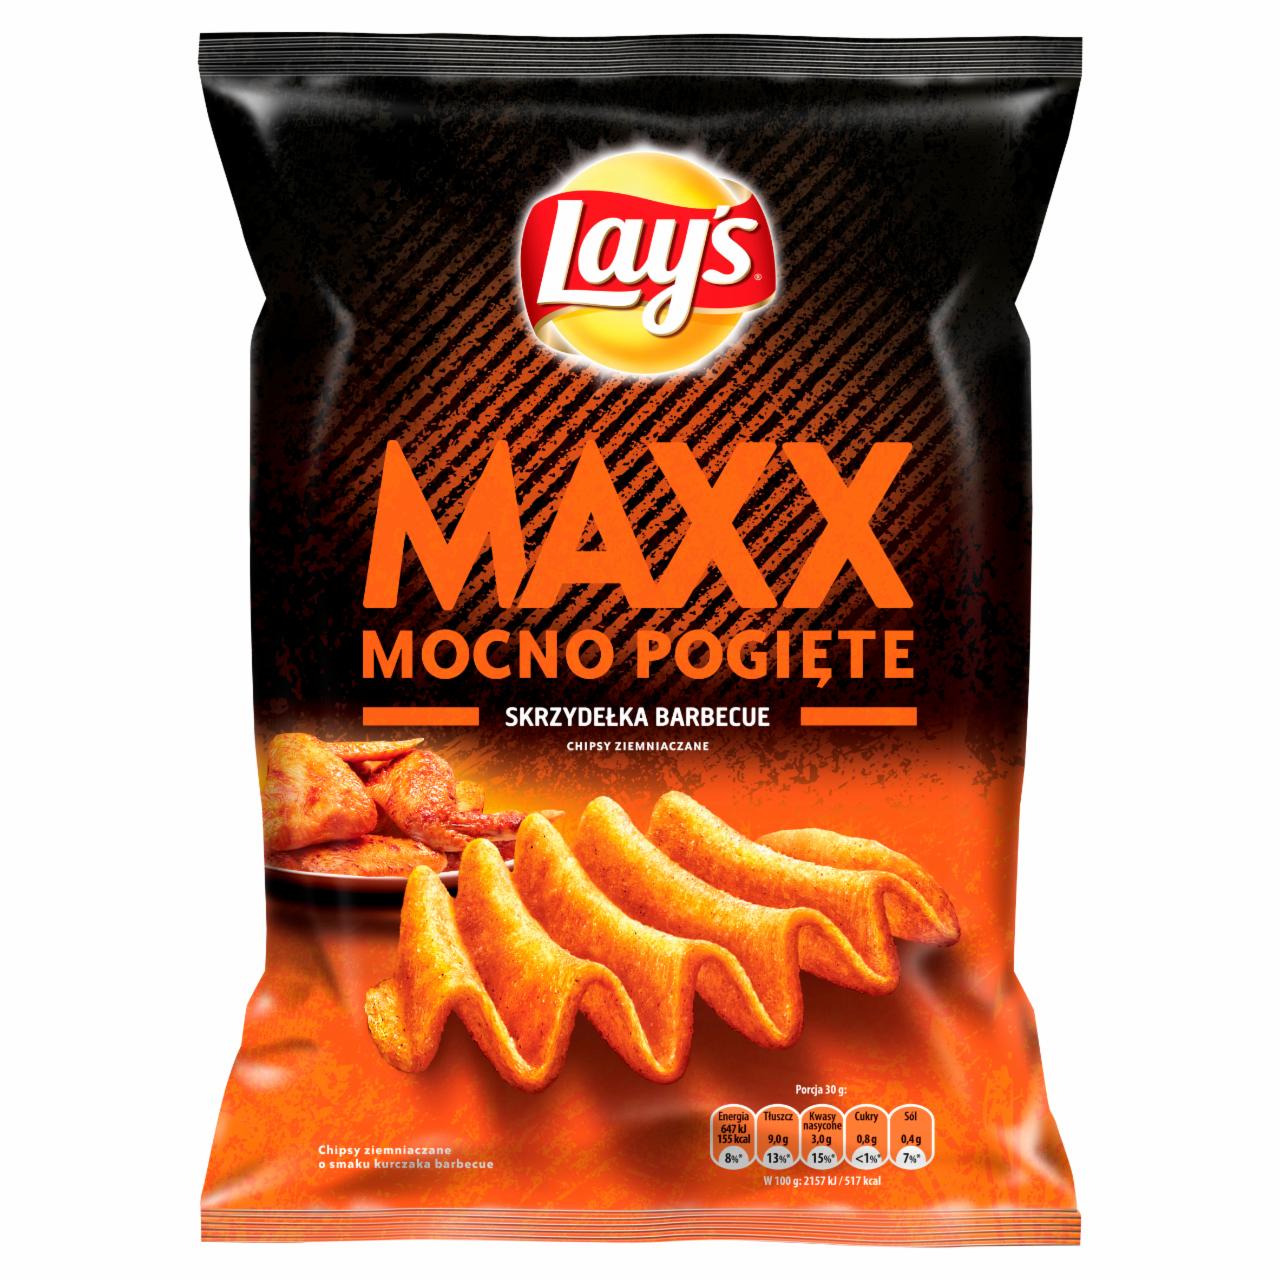 Zdjęcia - Lay's Maxx Mocno Pogięte o smaku skrzydełka barbecue Chipsy ziemniaczane 140 g